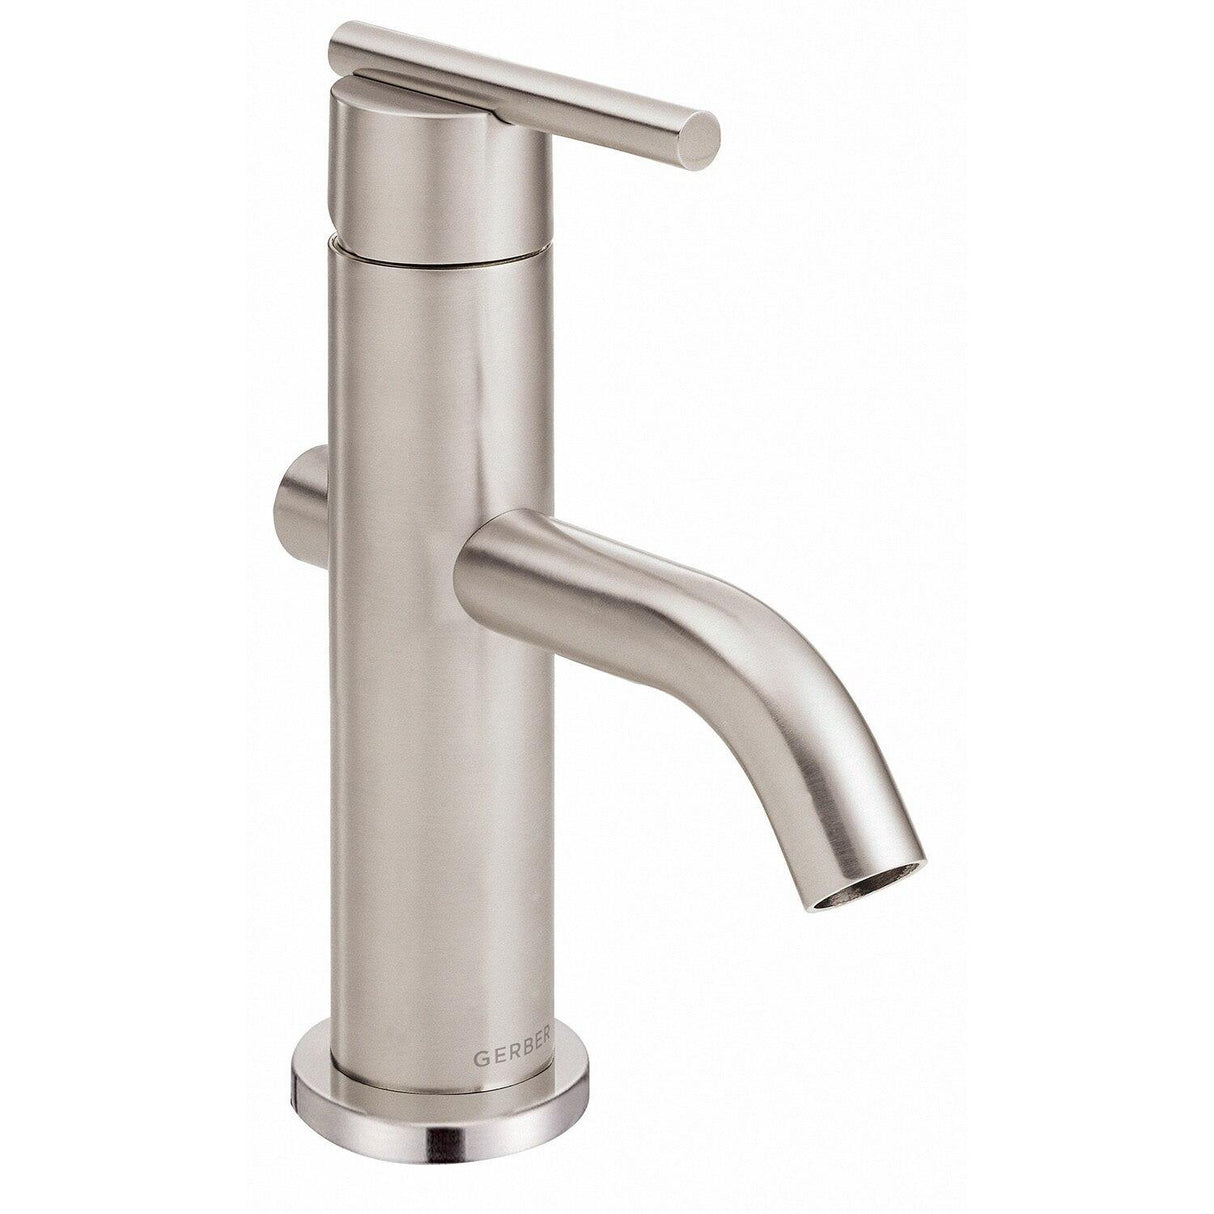 Gerber D236158 Chrome Parma Single Handle Lavatory Faucet